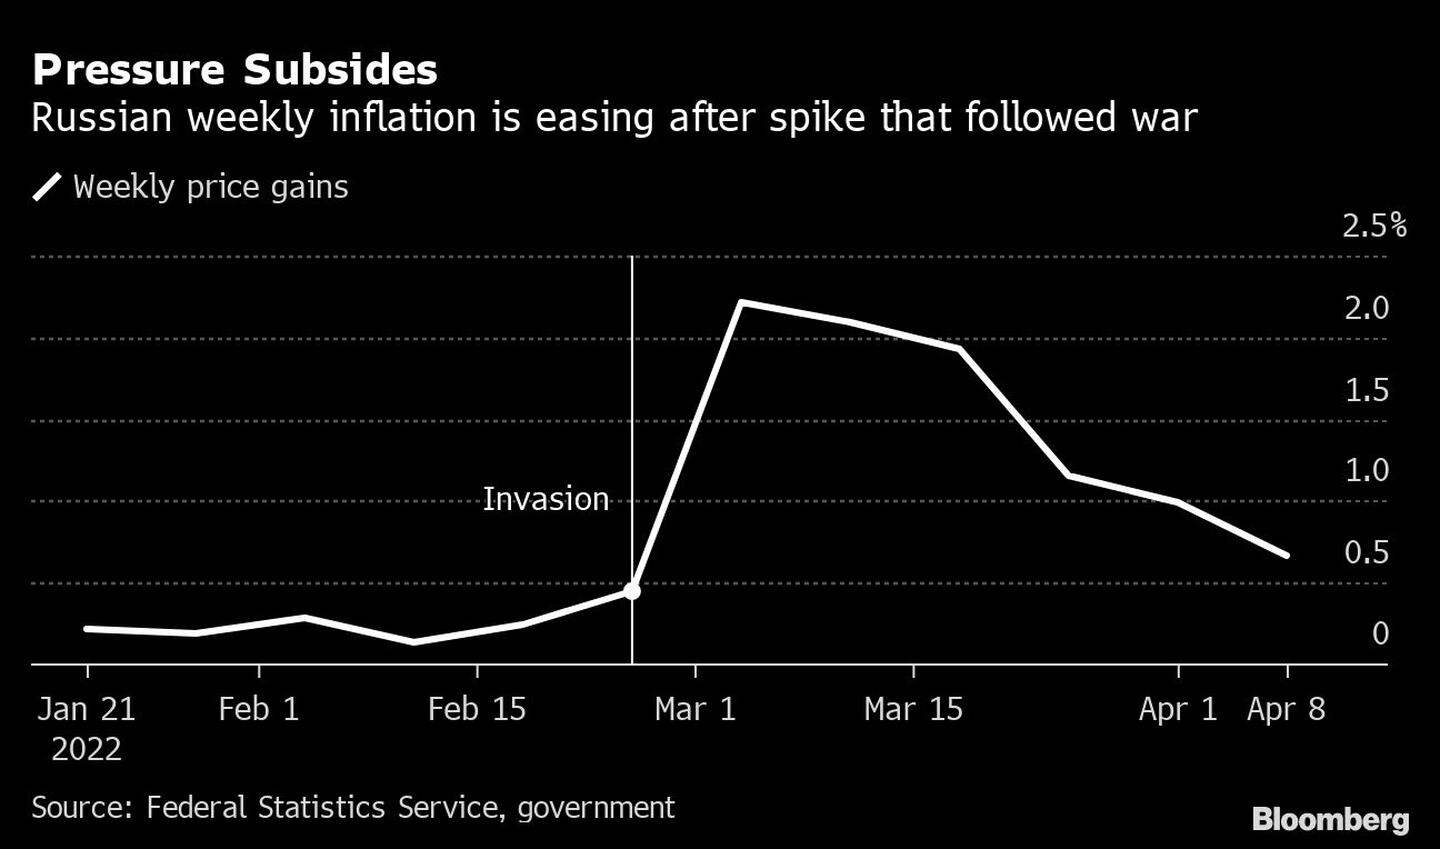 La presión disminuye
La inflación semanal rusa disminuye tras el pico que siguió a la guerra
Blanco: Aumento semanal de los preciosdfd